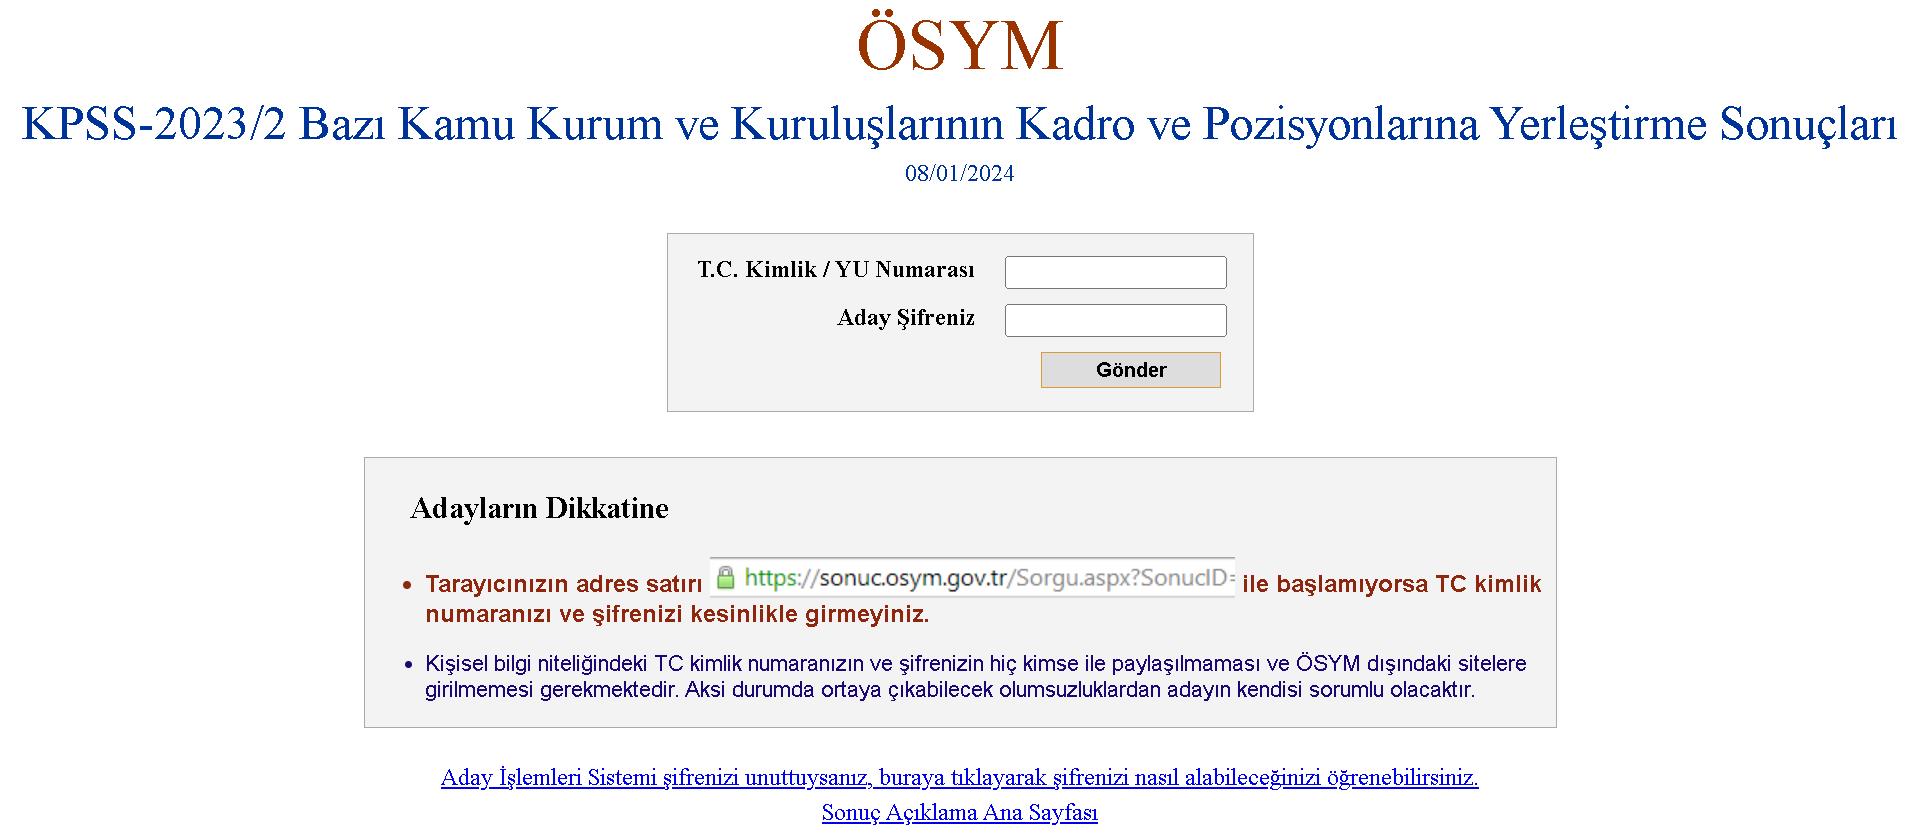 Osym Kpss Yerlestirme Sonuclari 08012024